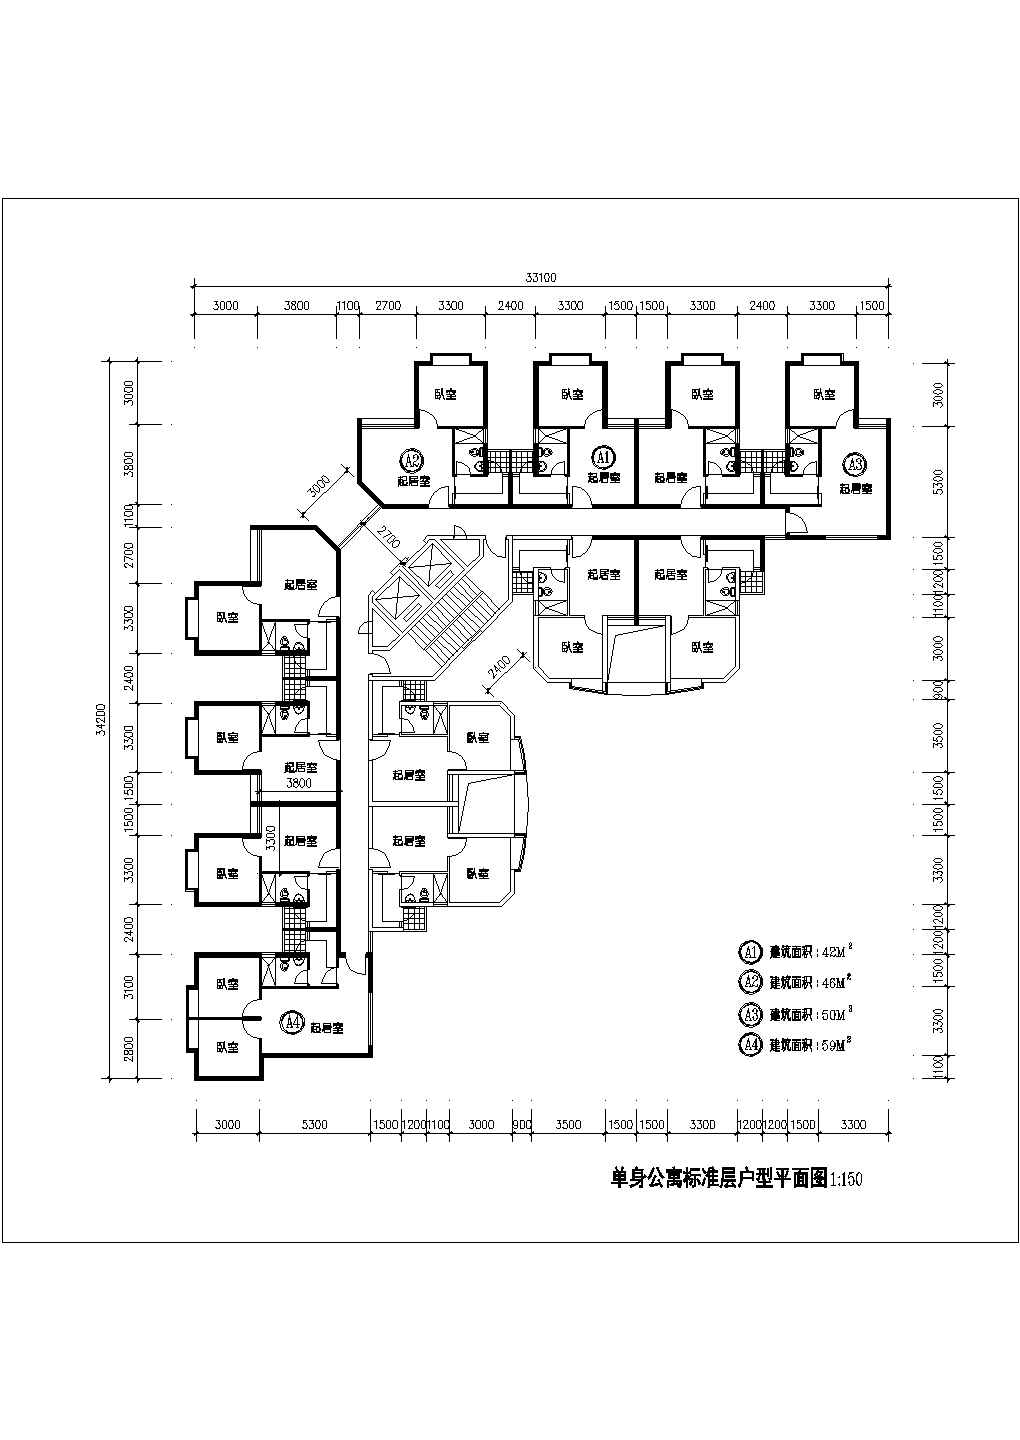 某CAD完整节点详细方案1楼2电梯12户单身公寓标准层户型平面图【（A1 A2 A3户型均为1室1厅1卫 面积42 46 50平米)（A4户型2室1厅1卫59平米）】